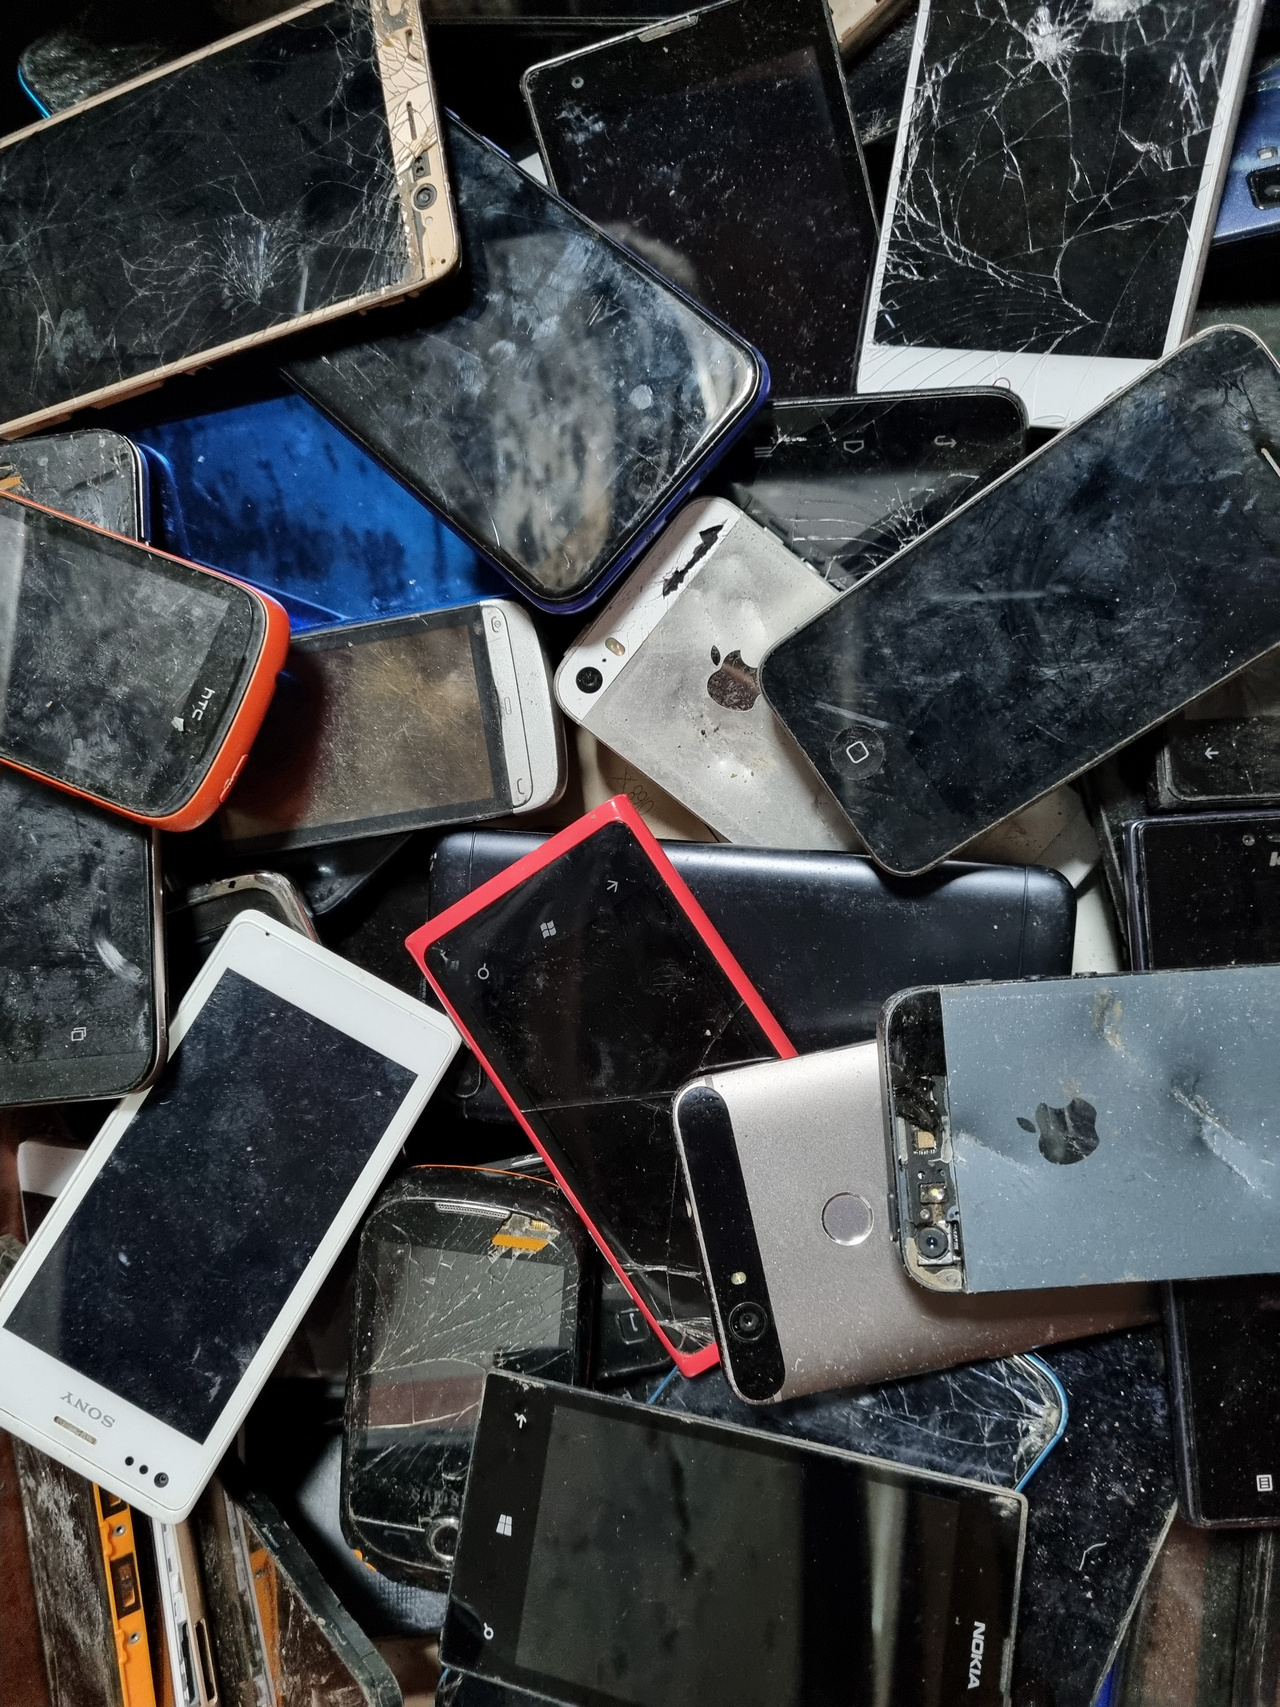 Mobilní telefony dotykové bez baterie